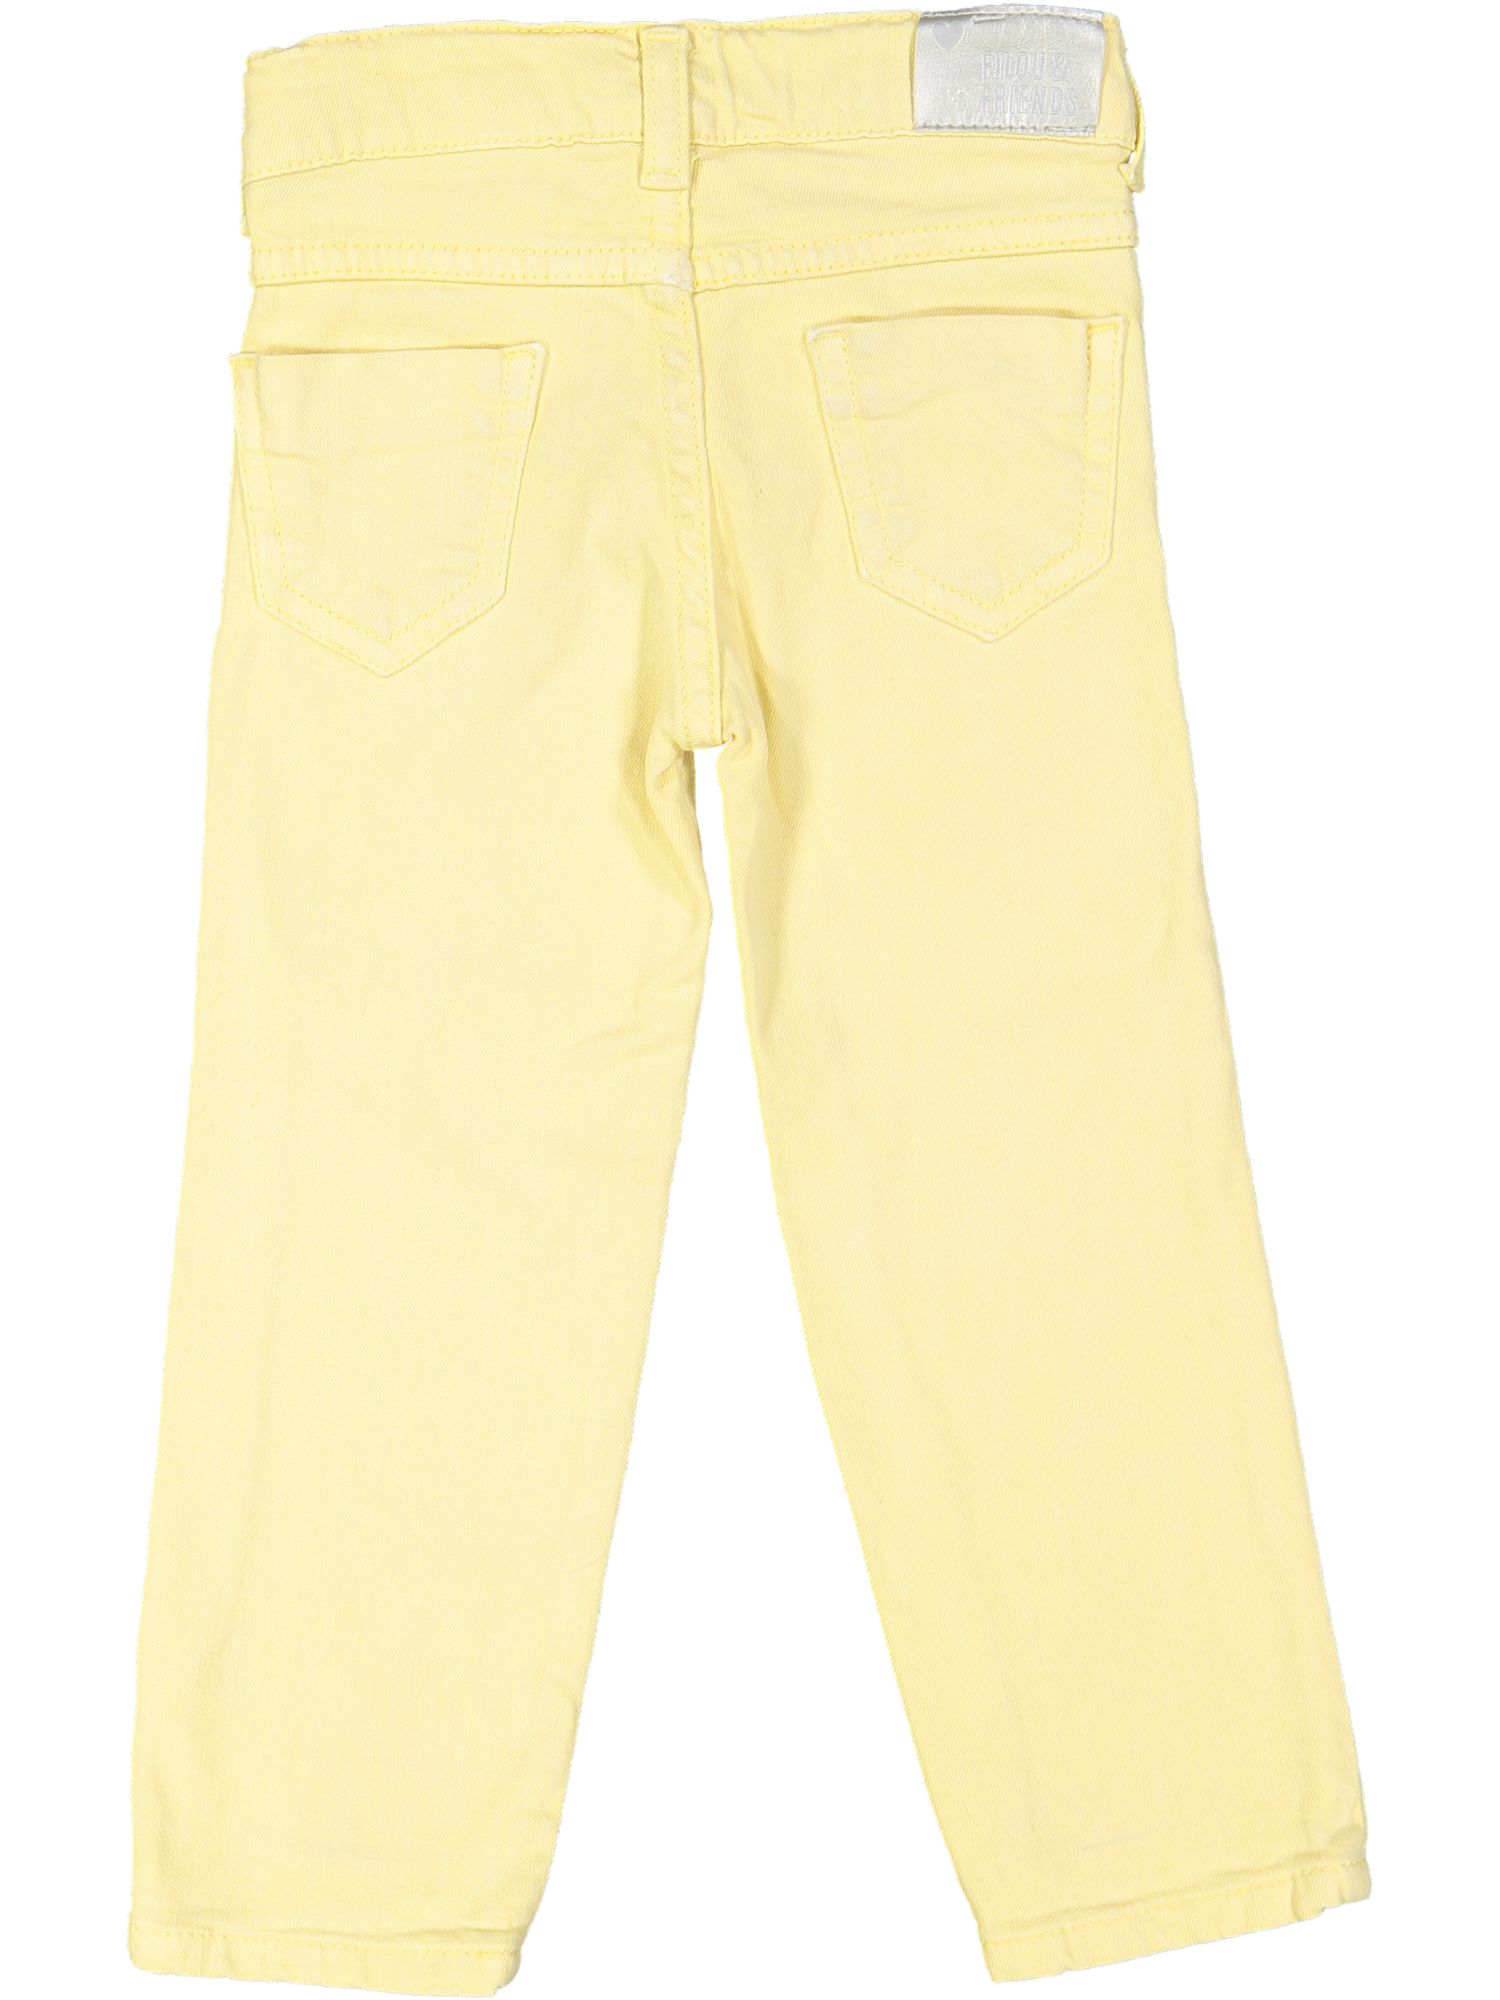 lange broek geel jeans 02j